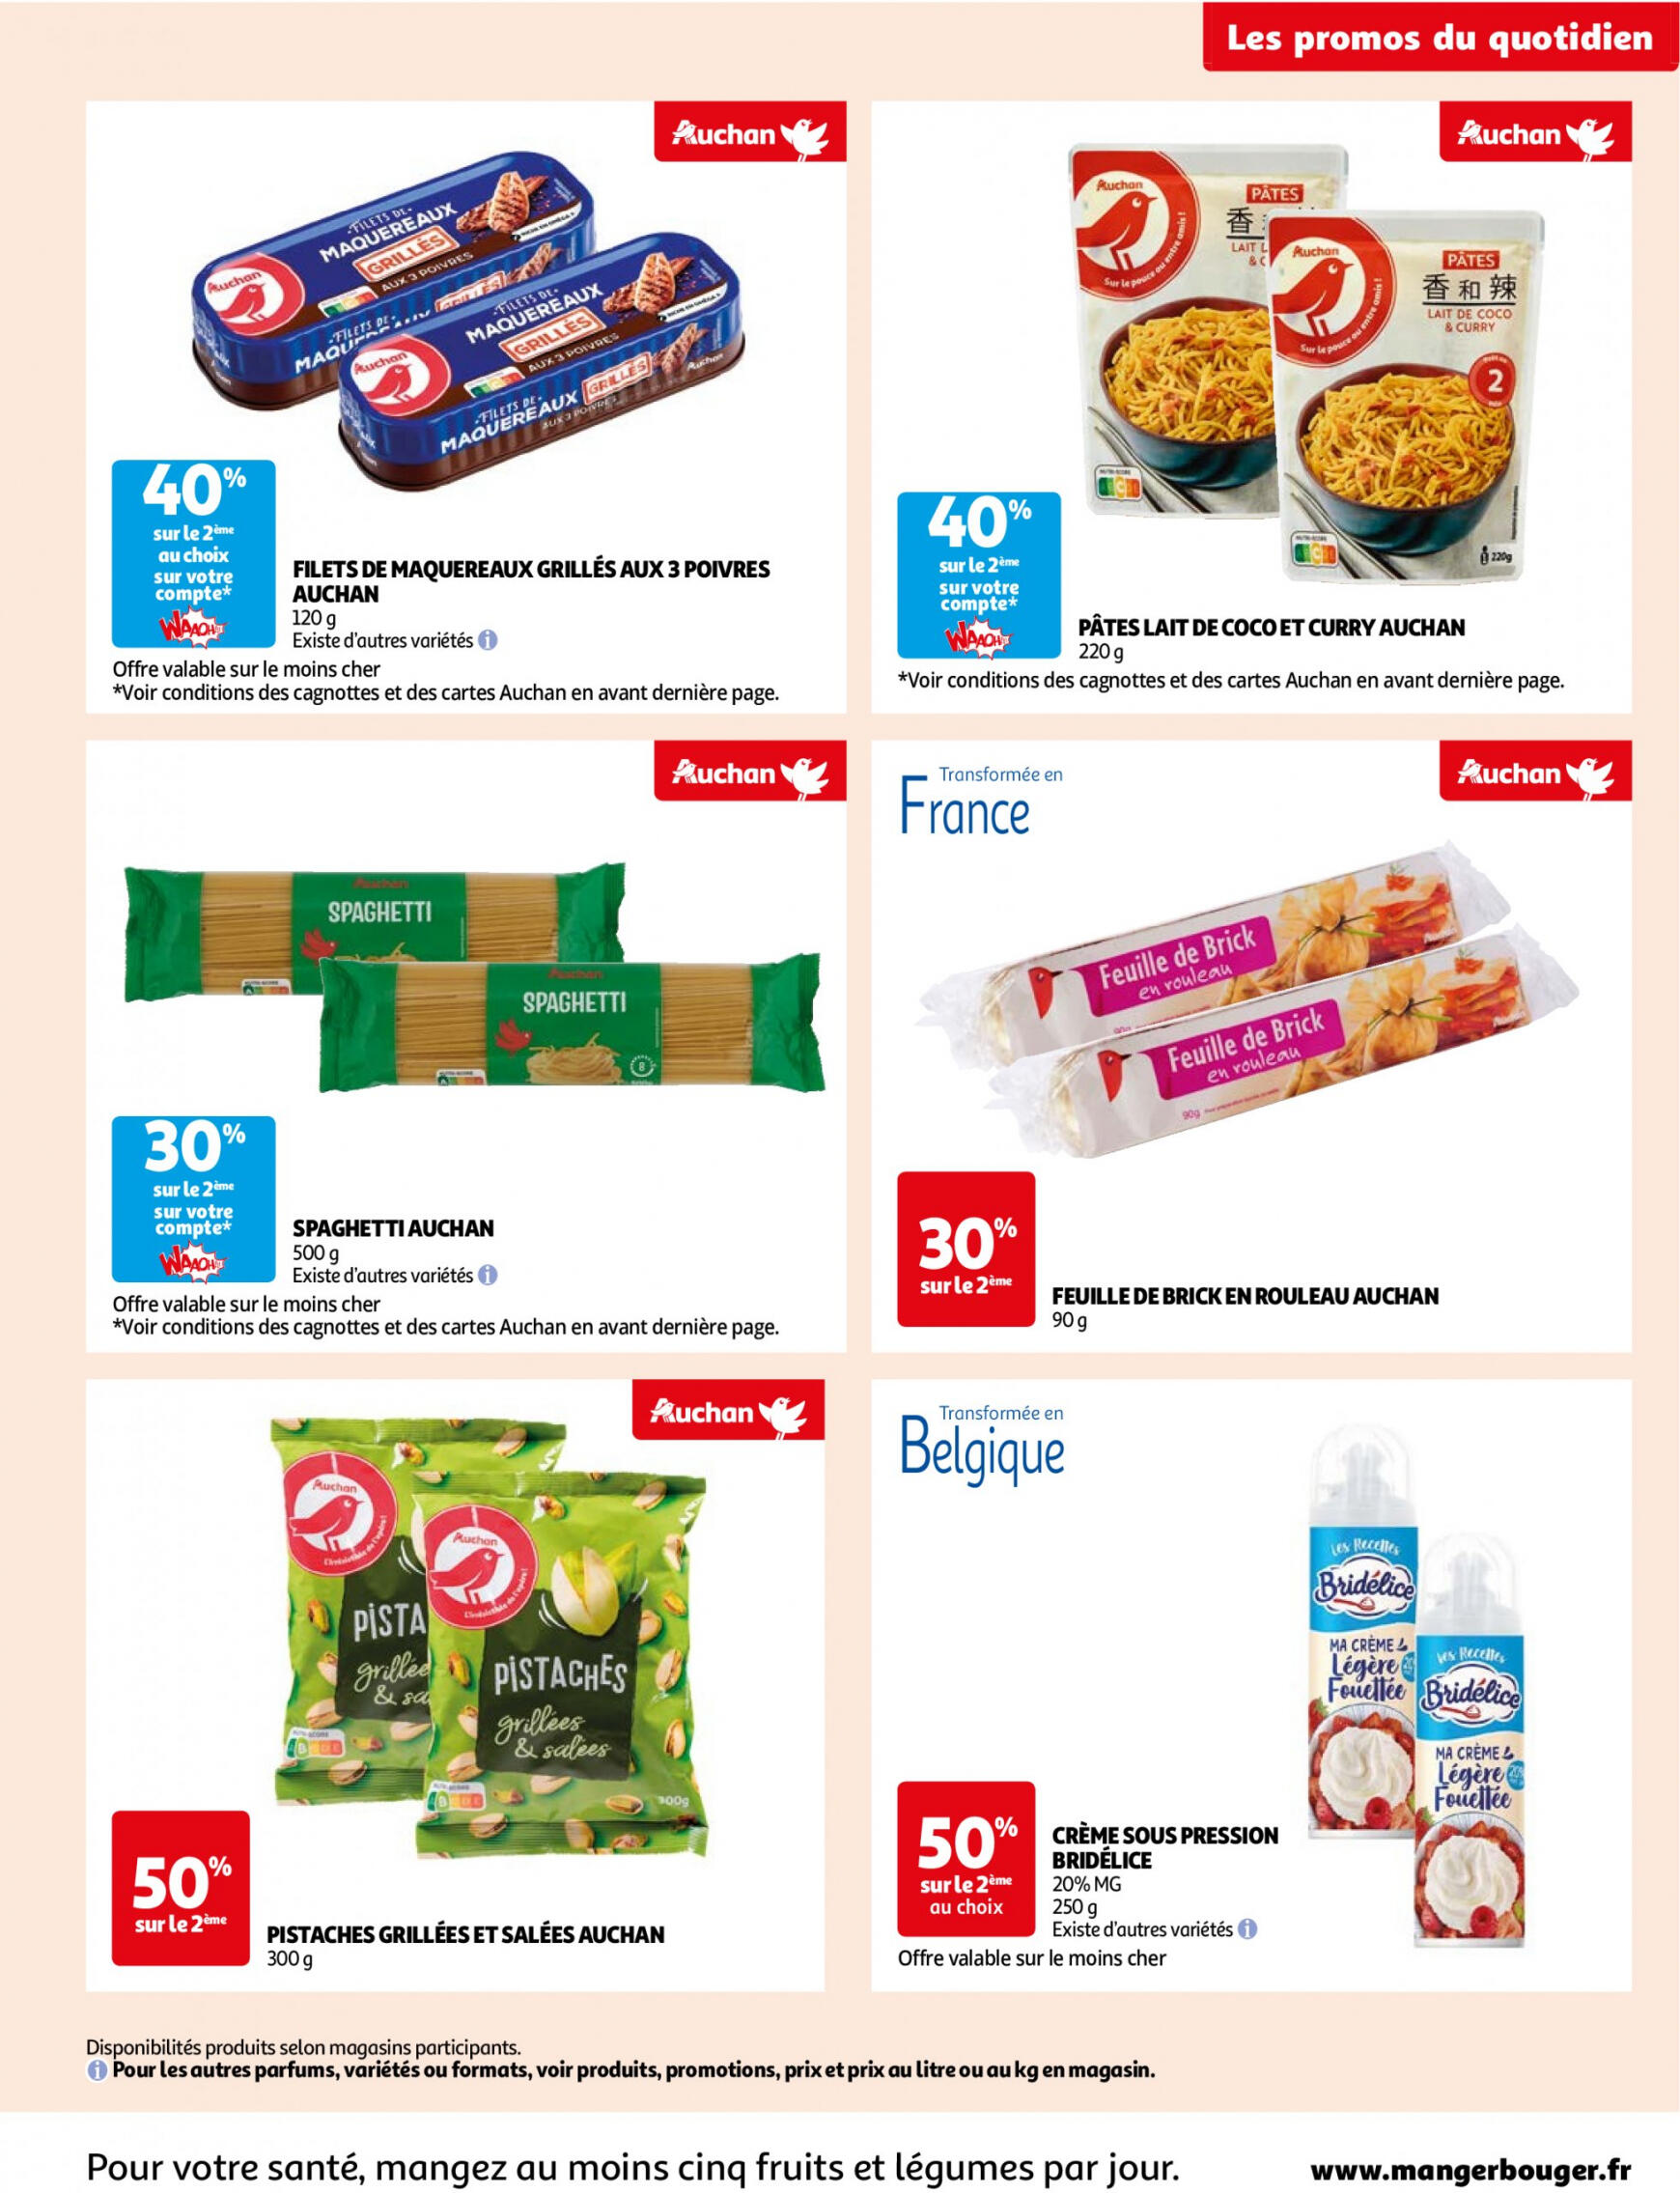 auchan - Prospectus Auchan Supermarché - Des économies au quotidien dans votre super actuel 14.05. - 02.06. - page: 5